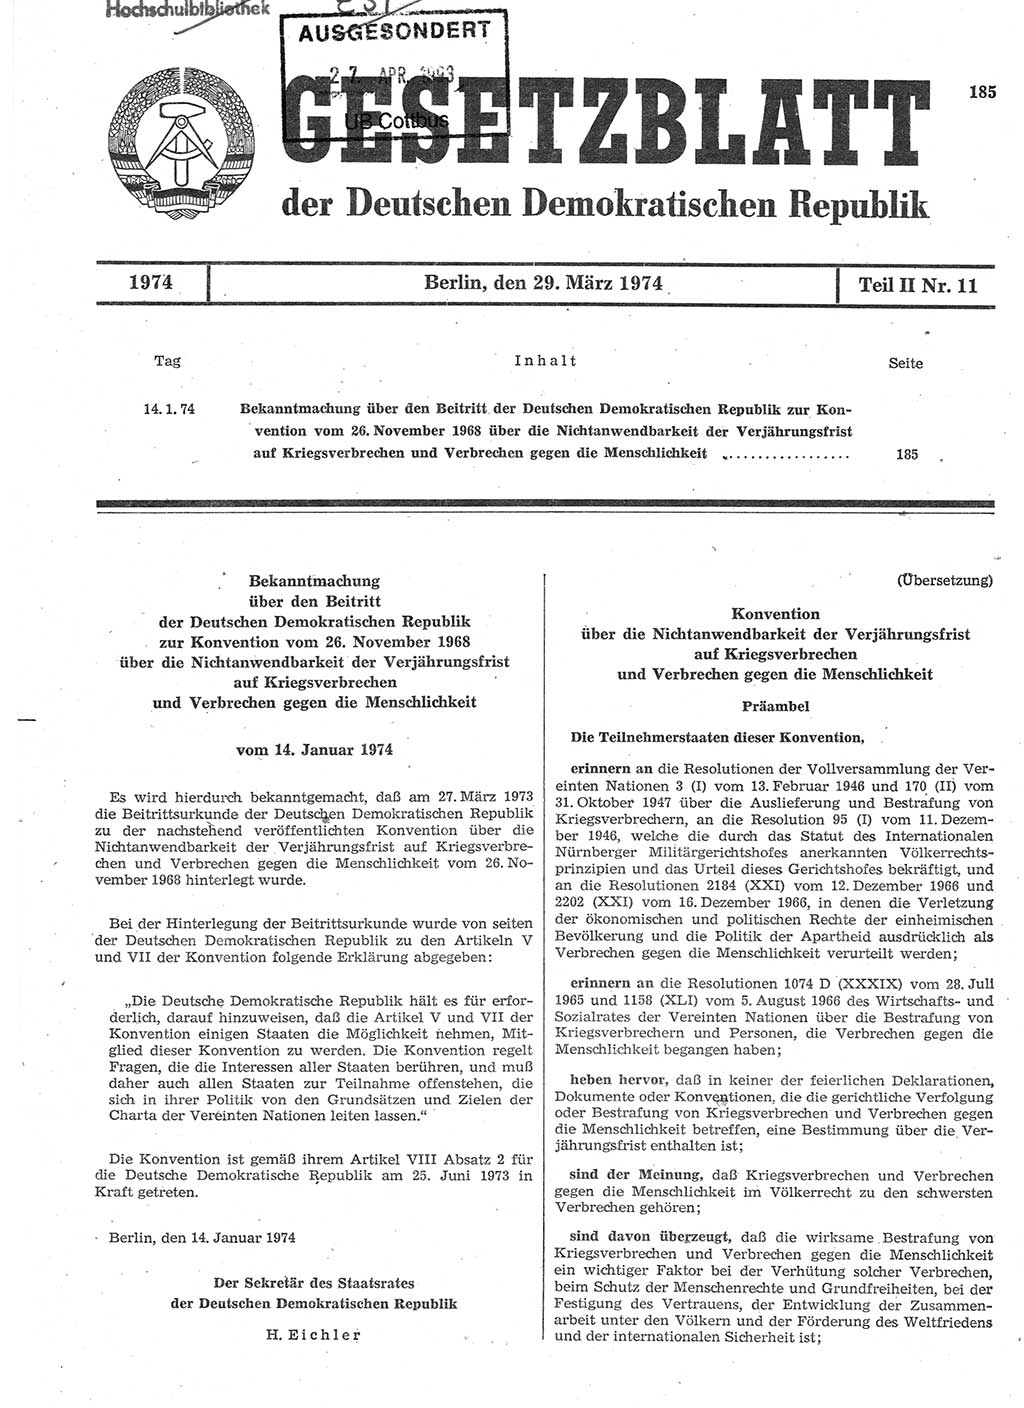 Gesetzblatt (GBl.) der Deutschen Demokratischen Republik (DDR) Teil ⅠⅠ 1974, Seite 185 (GBl. DDR ⅠⅠ 1974, S. 185)